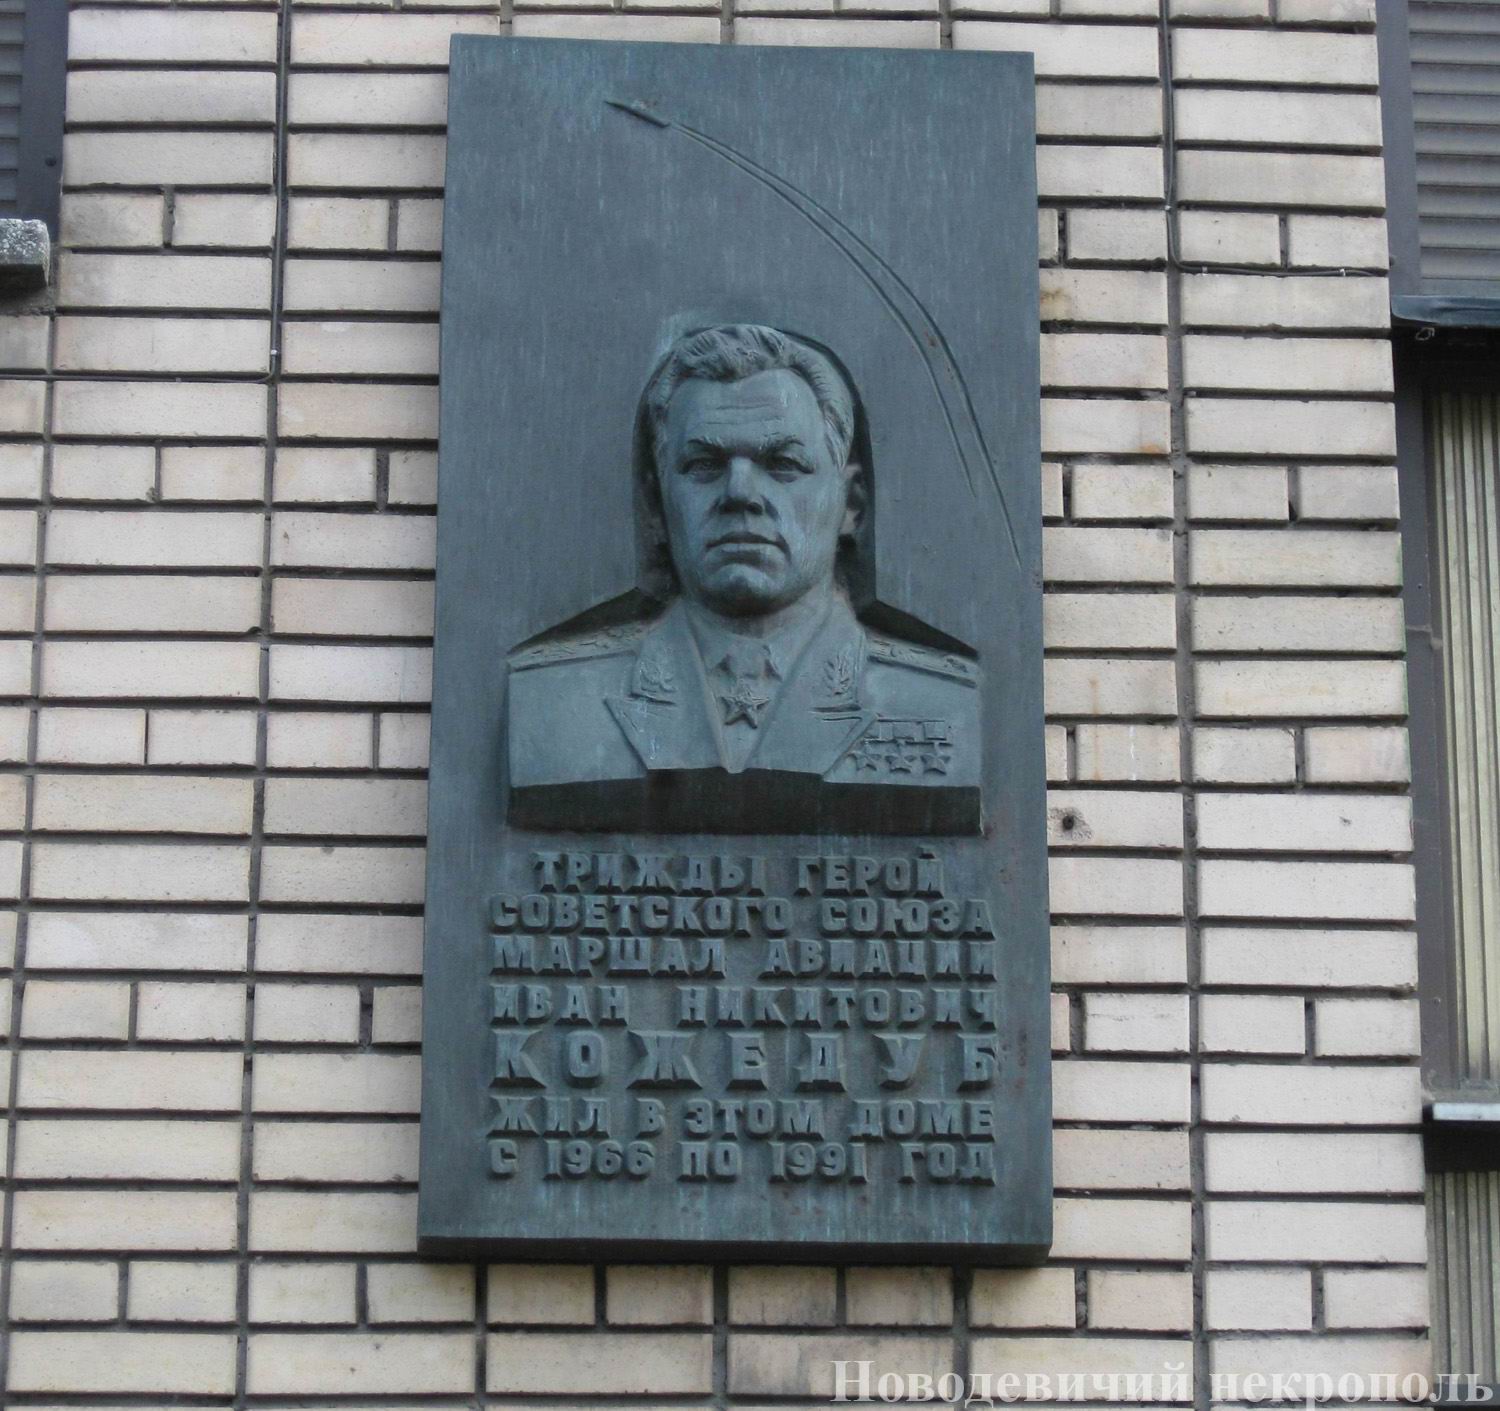 Мемориальная доска Кожедубу И.Н. (1920–1991), ск. А.И.Бельдюшкин, арх. Б.М.Щекура, на Сивцевом вражке, дом 31, открыта 9.8.1994.